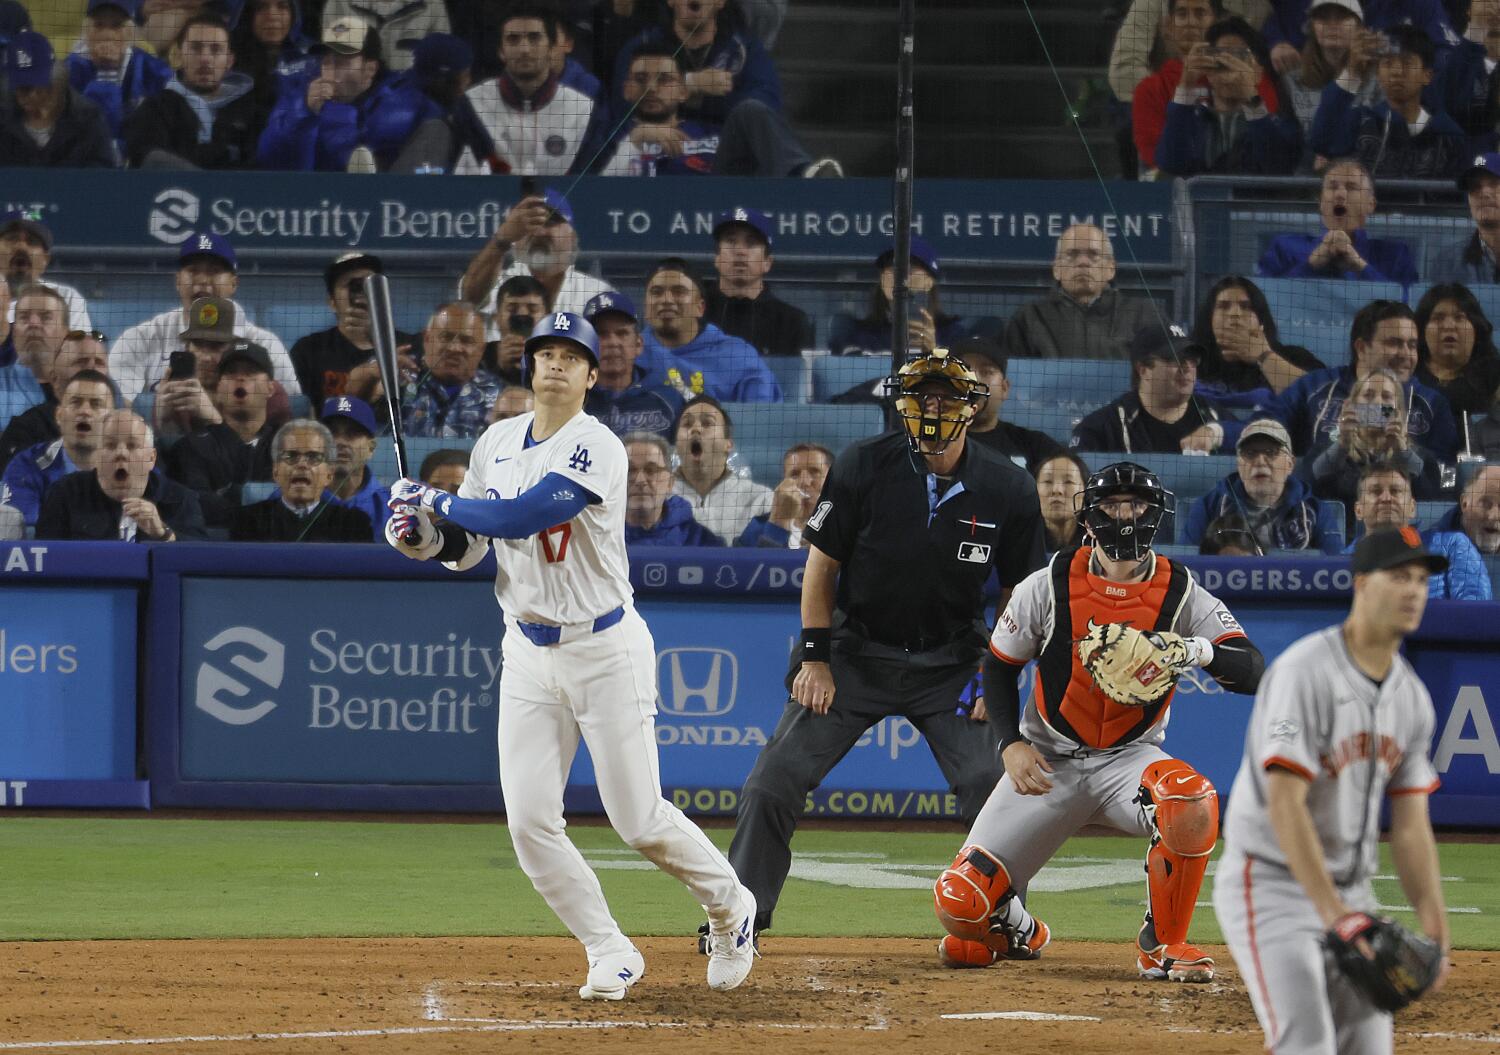 Plaschke: El primer jonrón de Shohei Ohtani con los Dodgers genera polémica entre los aficionados